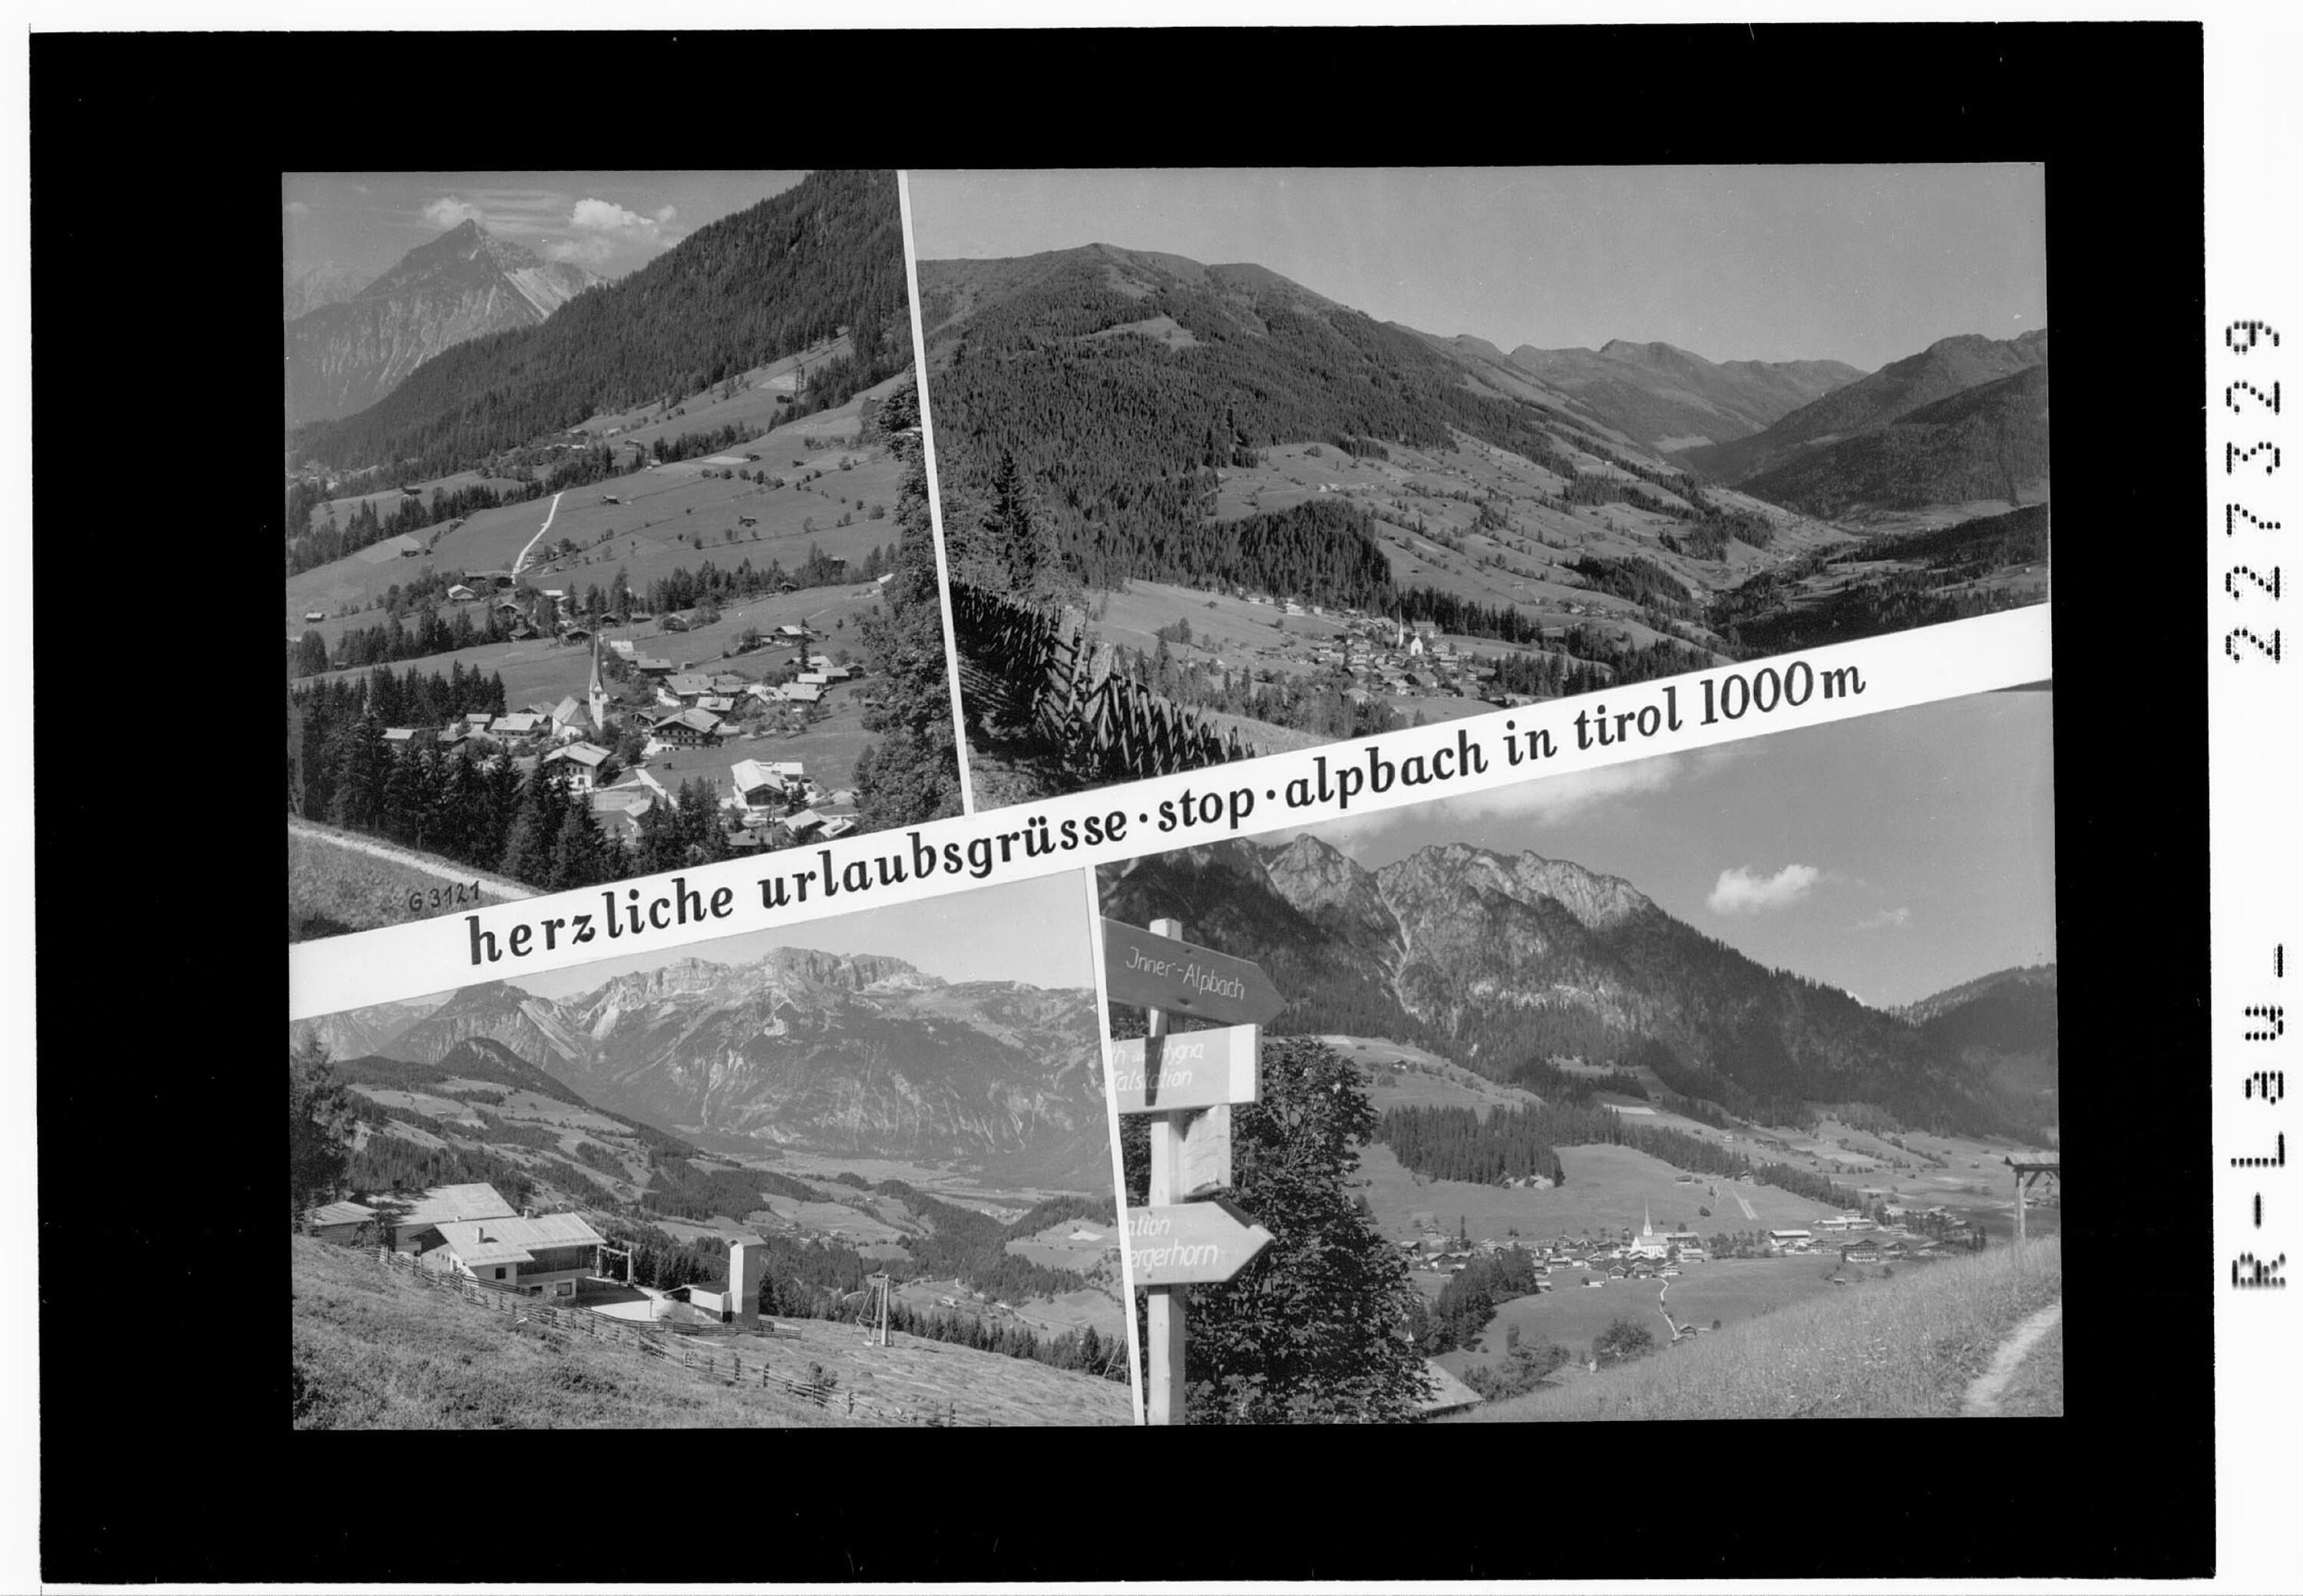 herziche urlaubsgrüsse - stop - alpbach in tirol 1000 m></div>


    <hr>
    <div class=